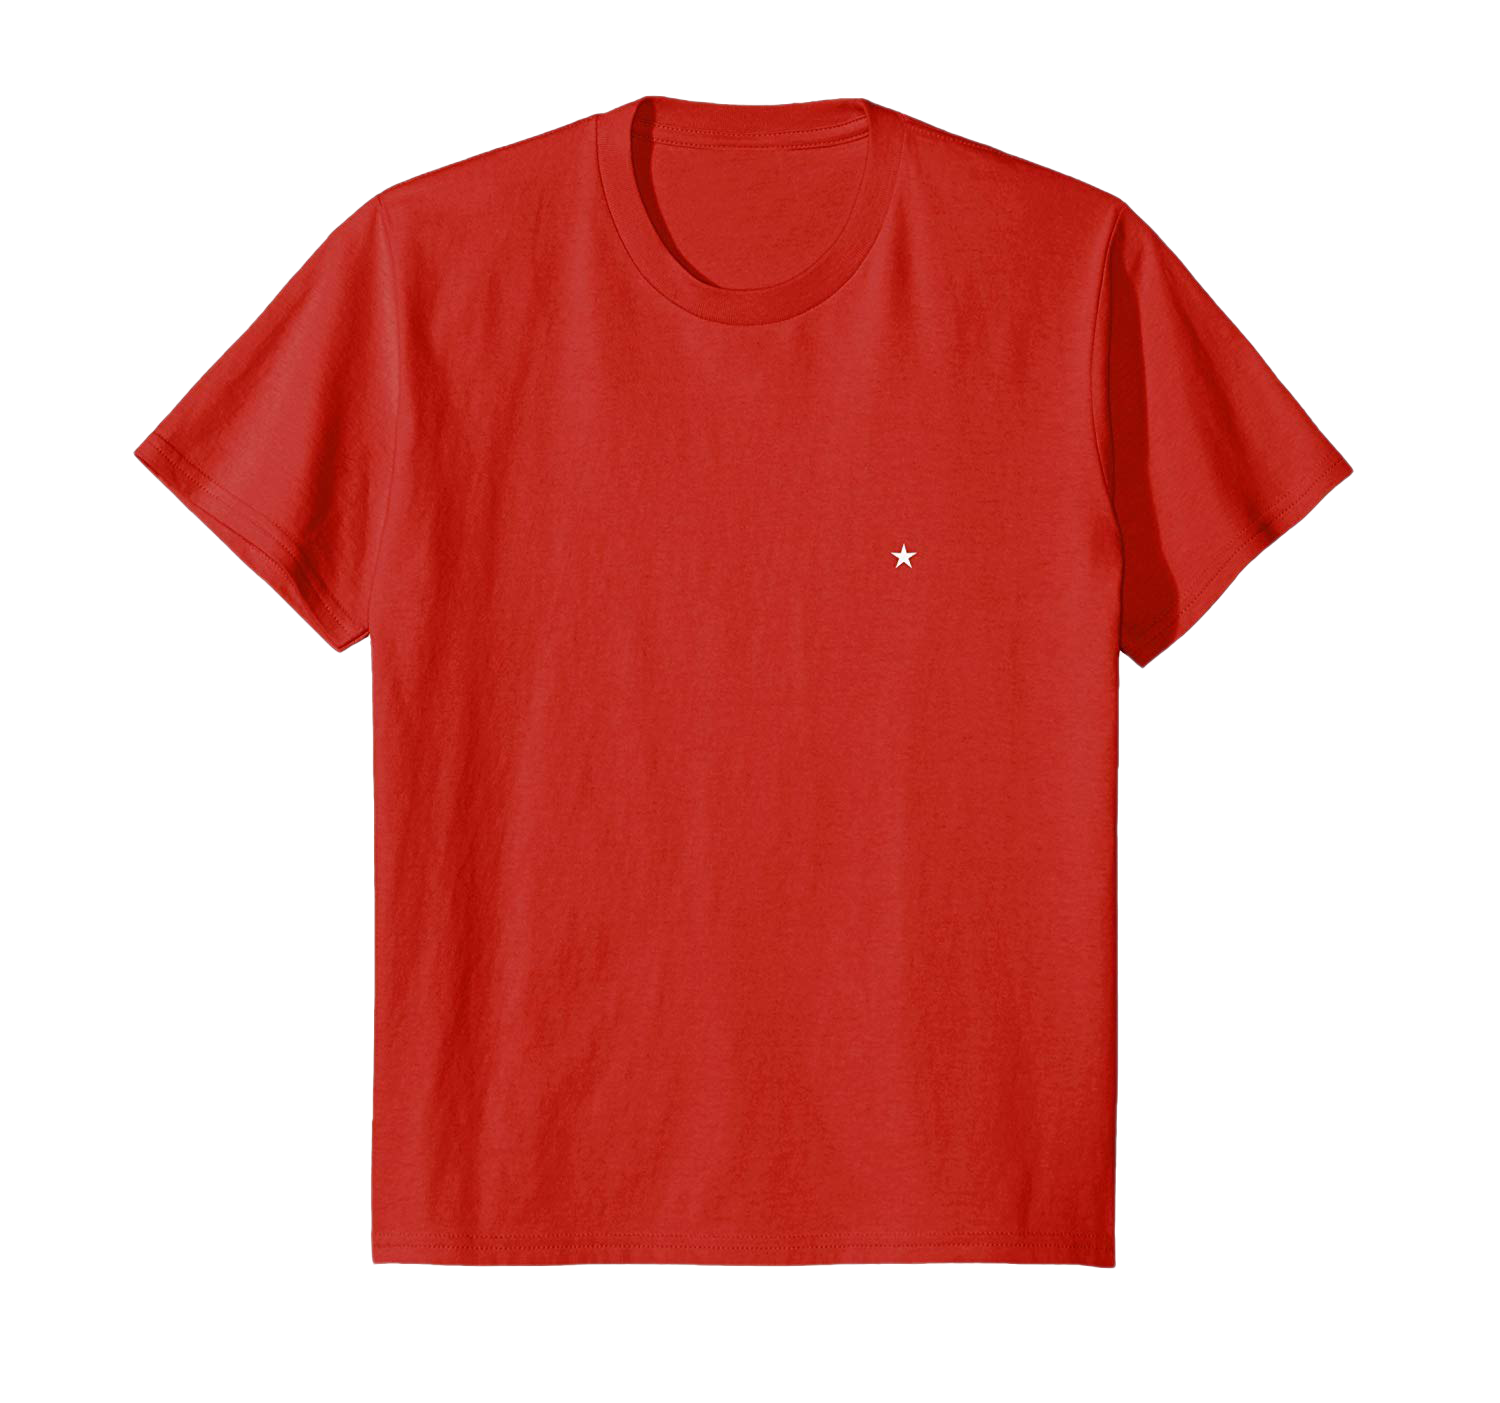 T-shirt merah polos PNG Gambar berkualitas tinggi